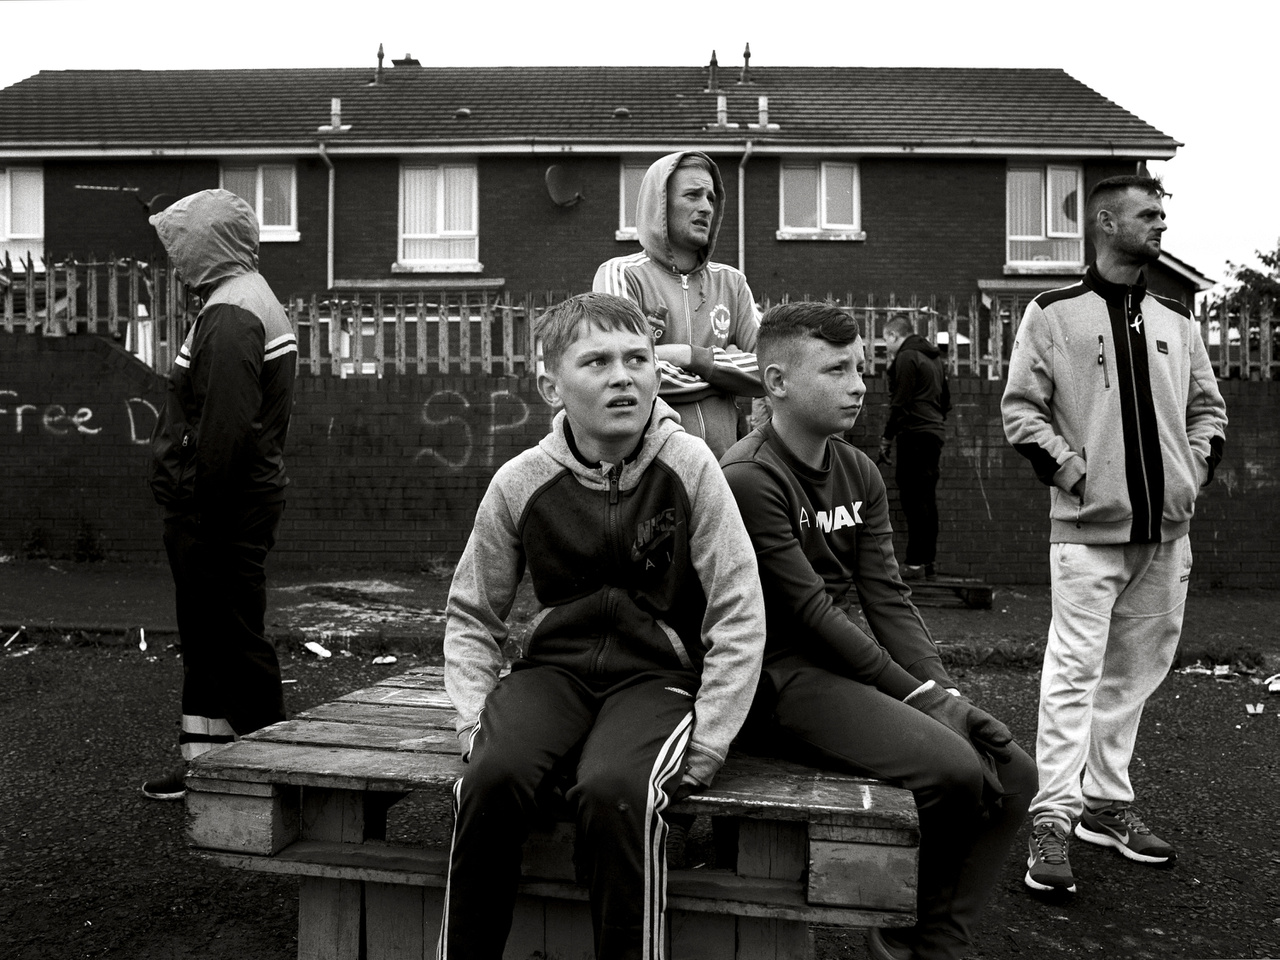 Munkanélküliség, bűnöző bandák, drogok és alkohol - ez vár rengeteg mai tinire az Egyesült Királyság félreeső részein, az egykor virágzó vidéki iparvárosokban, ahol a jólétet mérő társadalmi mutatók az országos átlagnál 3-11-szer rosszabbak.Észak-Írország egyes részein a súlyos helyzetet vallási szegregáció és egykori félkatonai csoportok utódszervezetei súlyosbítják.